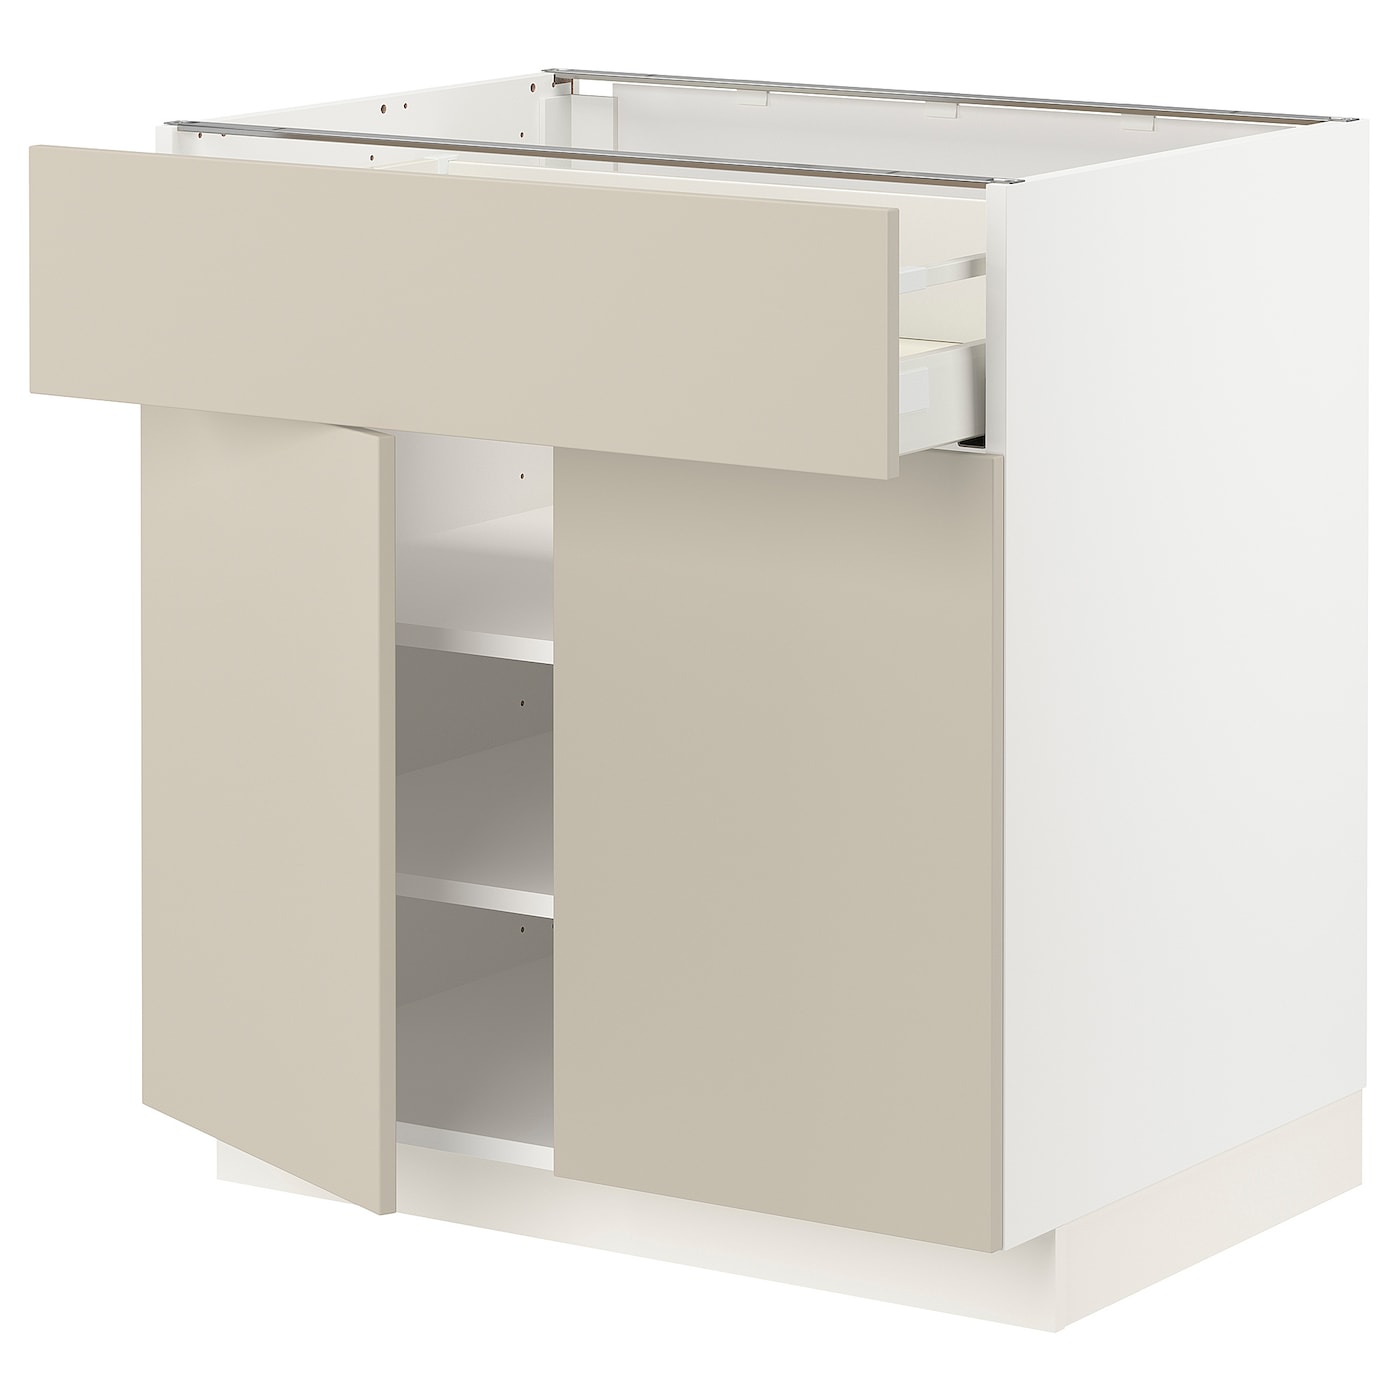 Напольный кухонный шкаф  - IKEA METOD MAXIMERA, 88x61,6x80см, белый/бежевый, МЕТОД МАКСИМЕРА ИКЕА